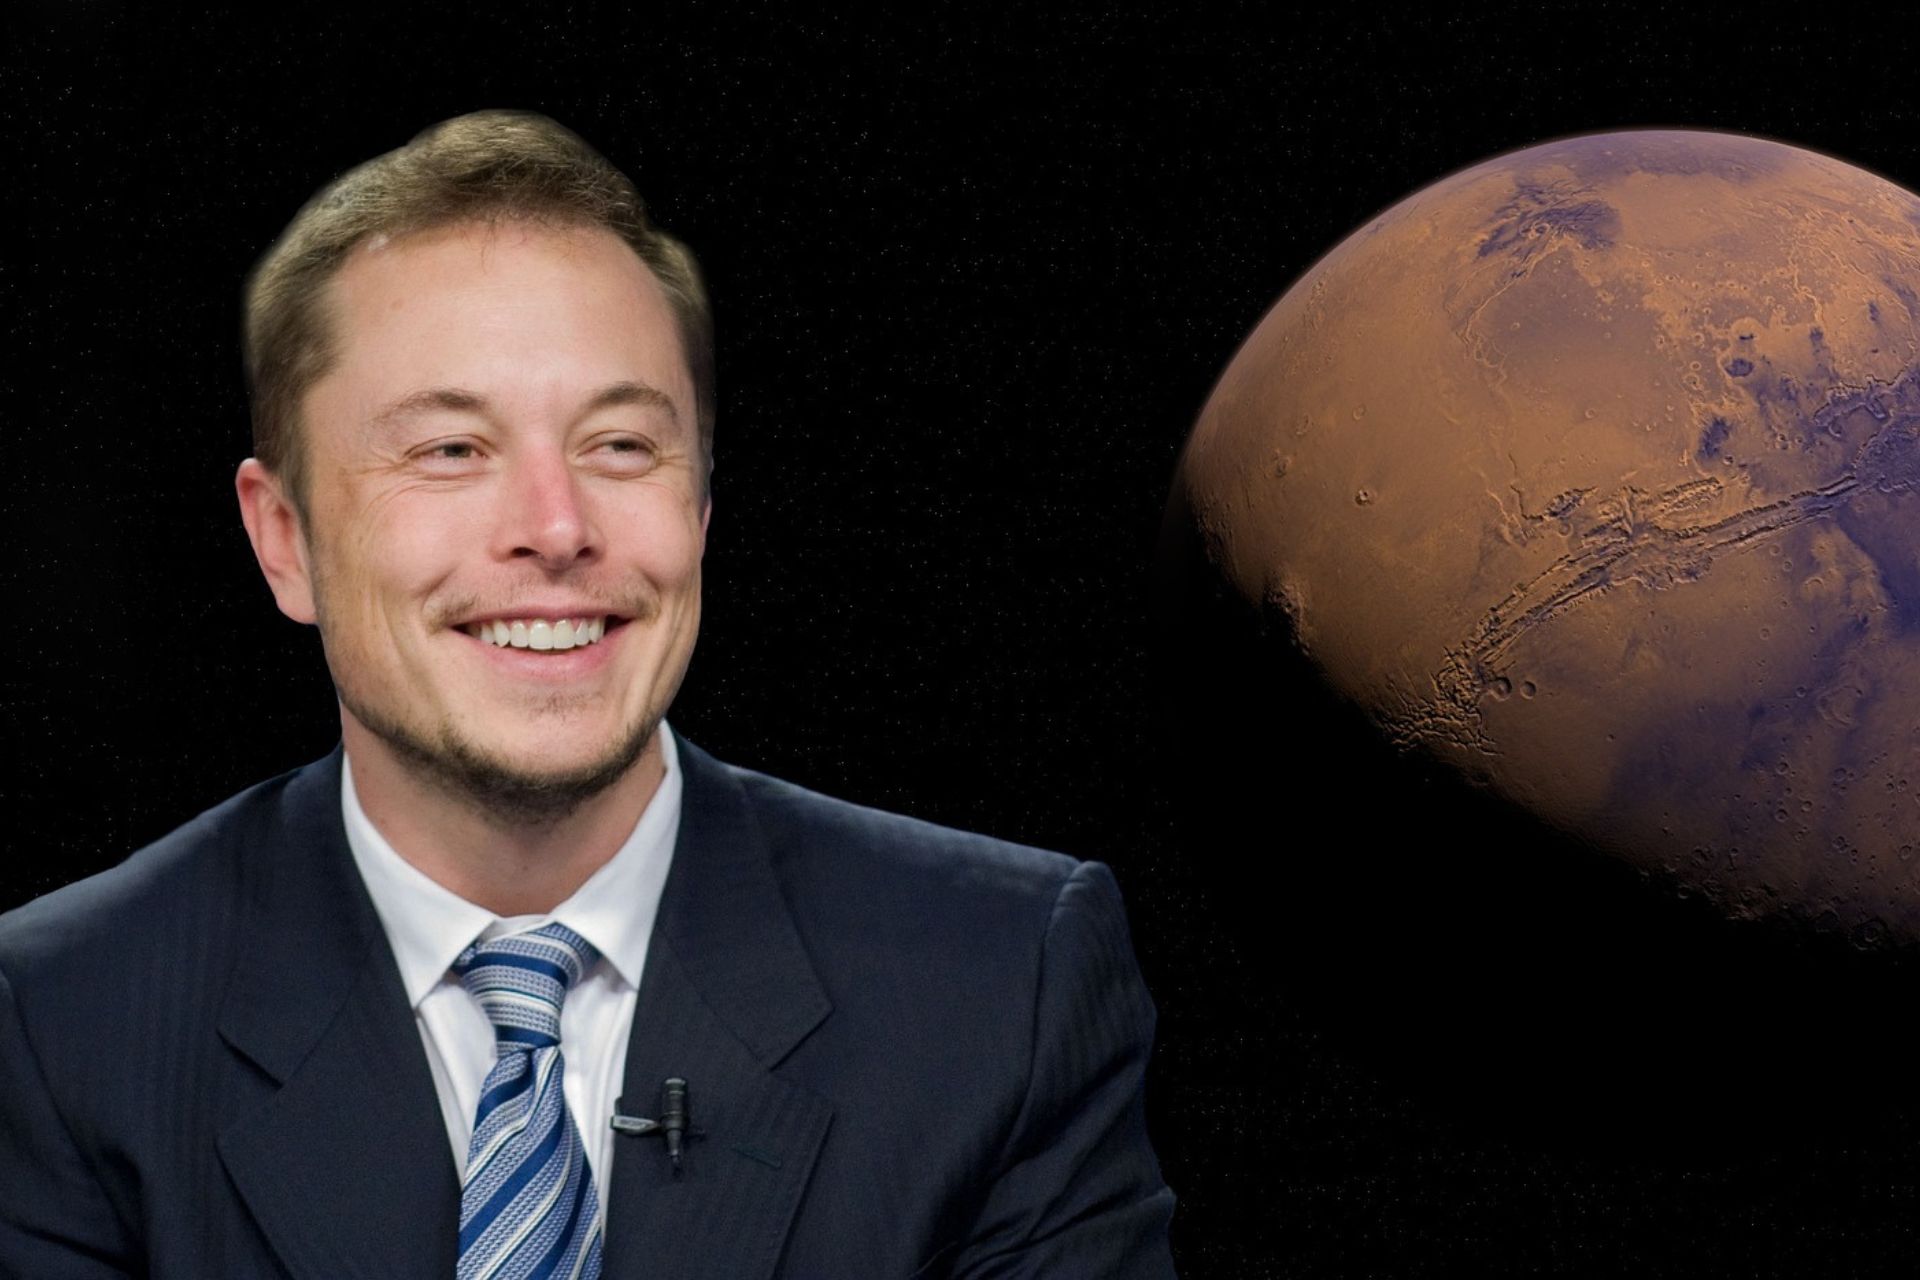 Elon Musk e Twitter: Elon Musk, il famoso miliardario americano CEO di Tesla, costruttore di auto elettriche